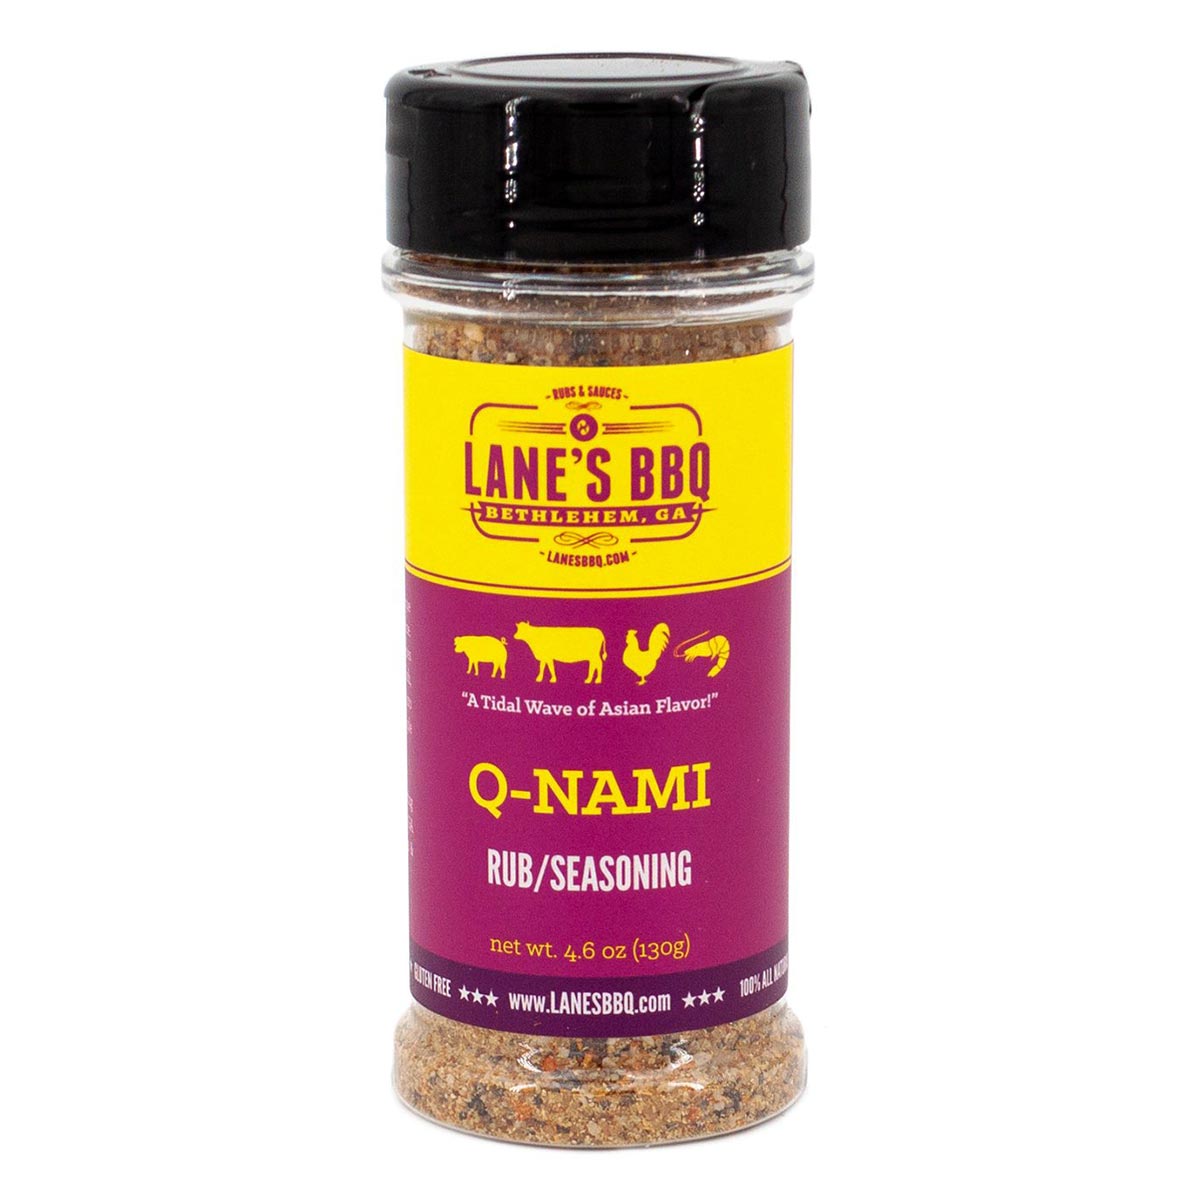 Lane's Q-NAMI Rub 4.6oz